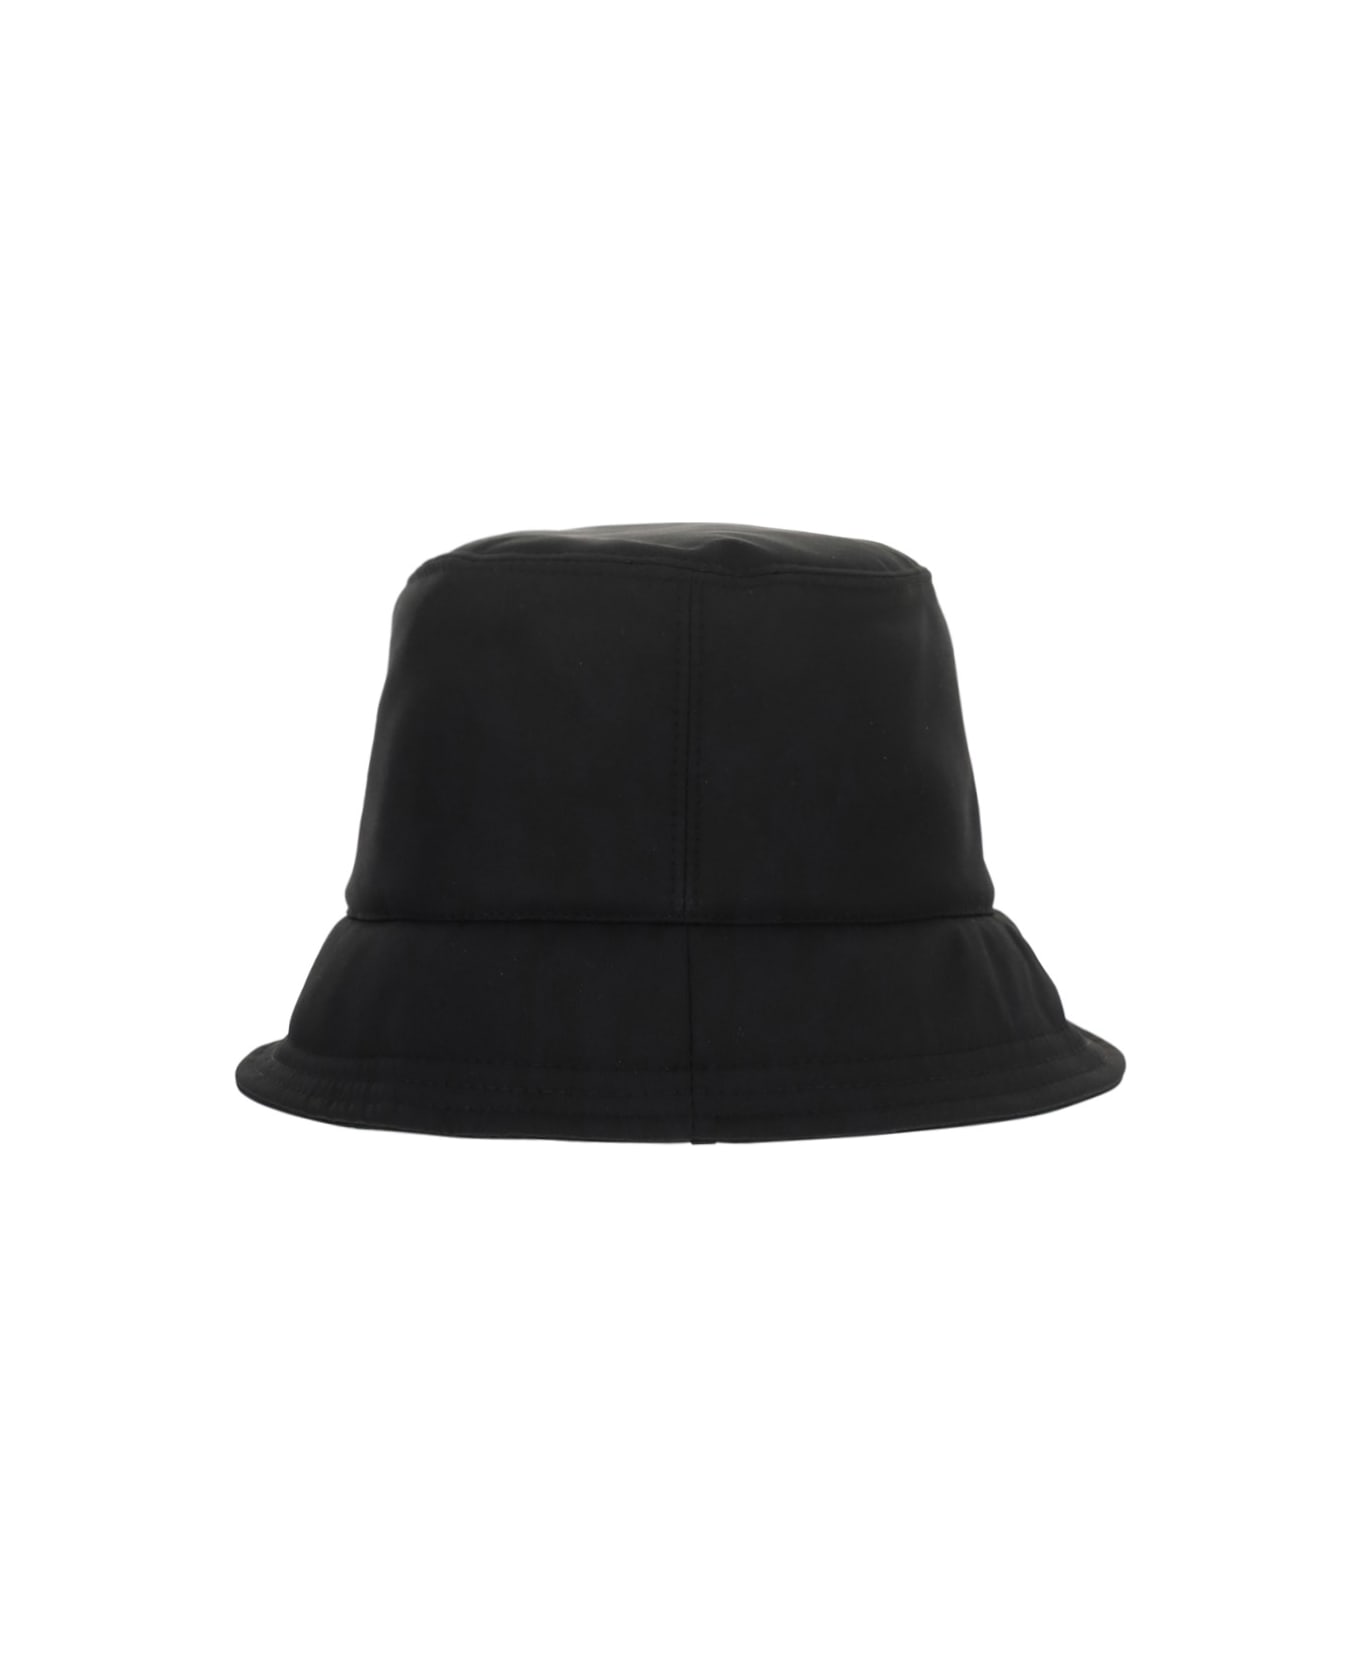 Off-White Bucket Hat - Nero